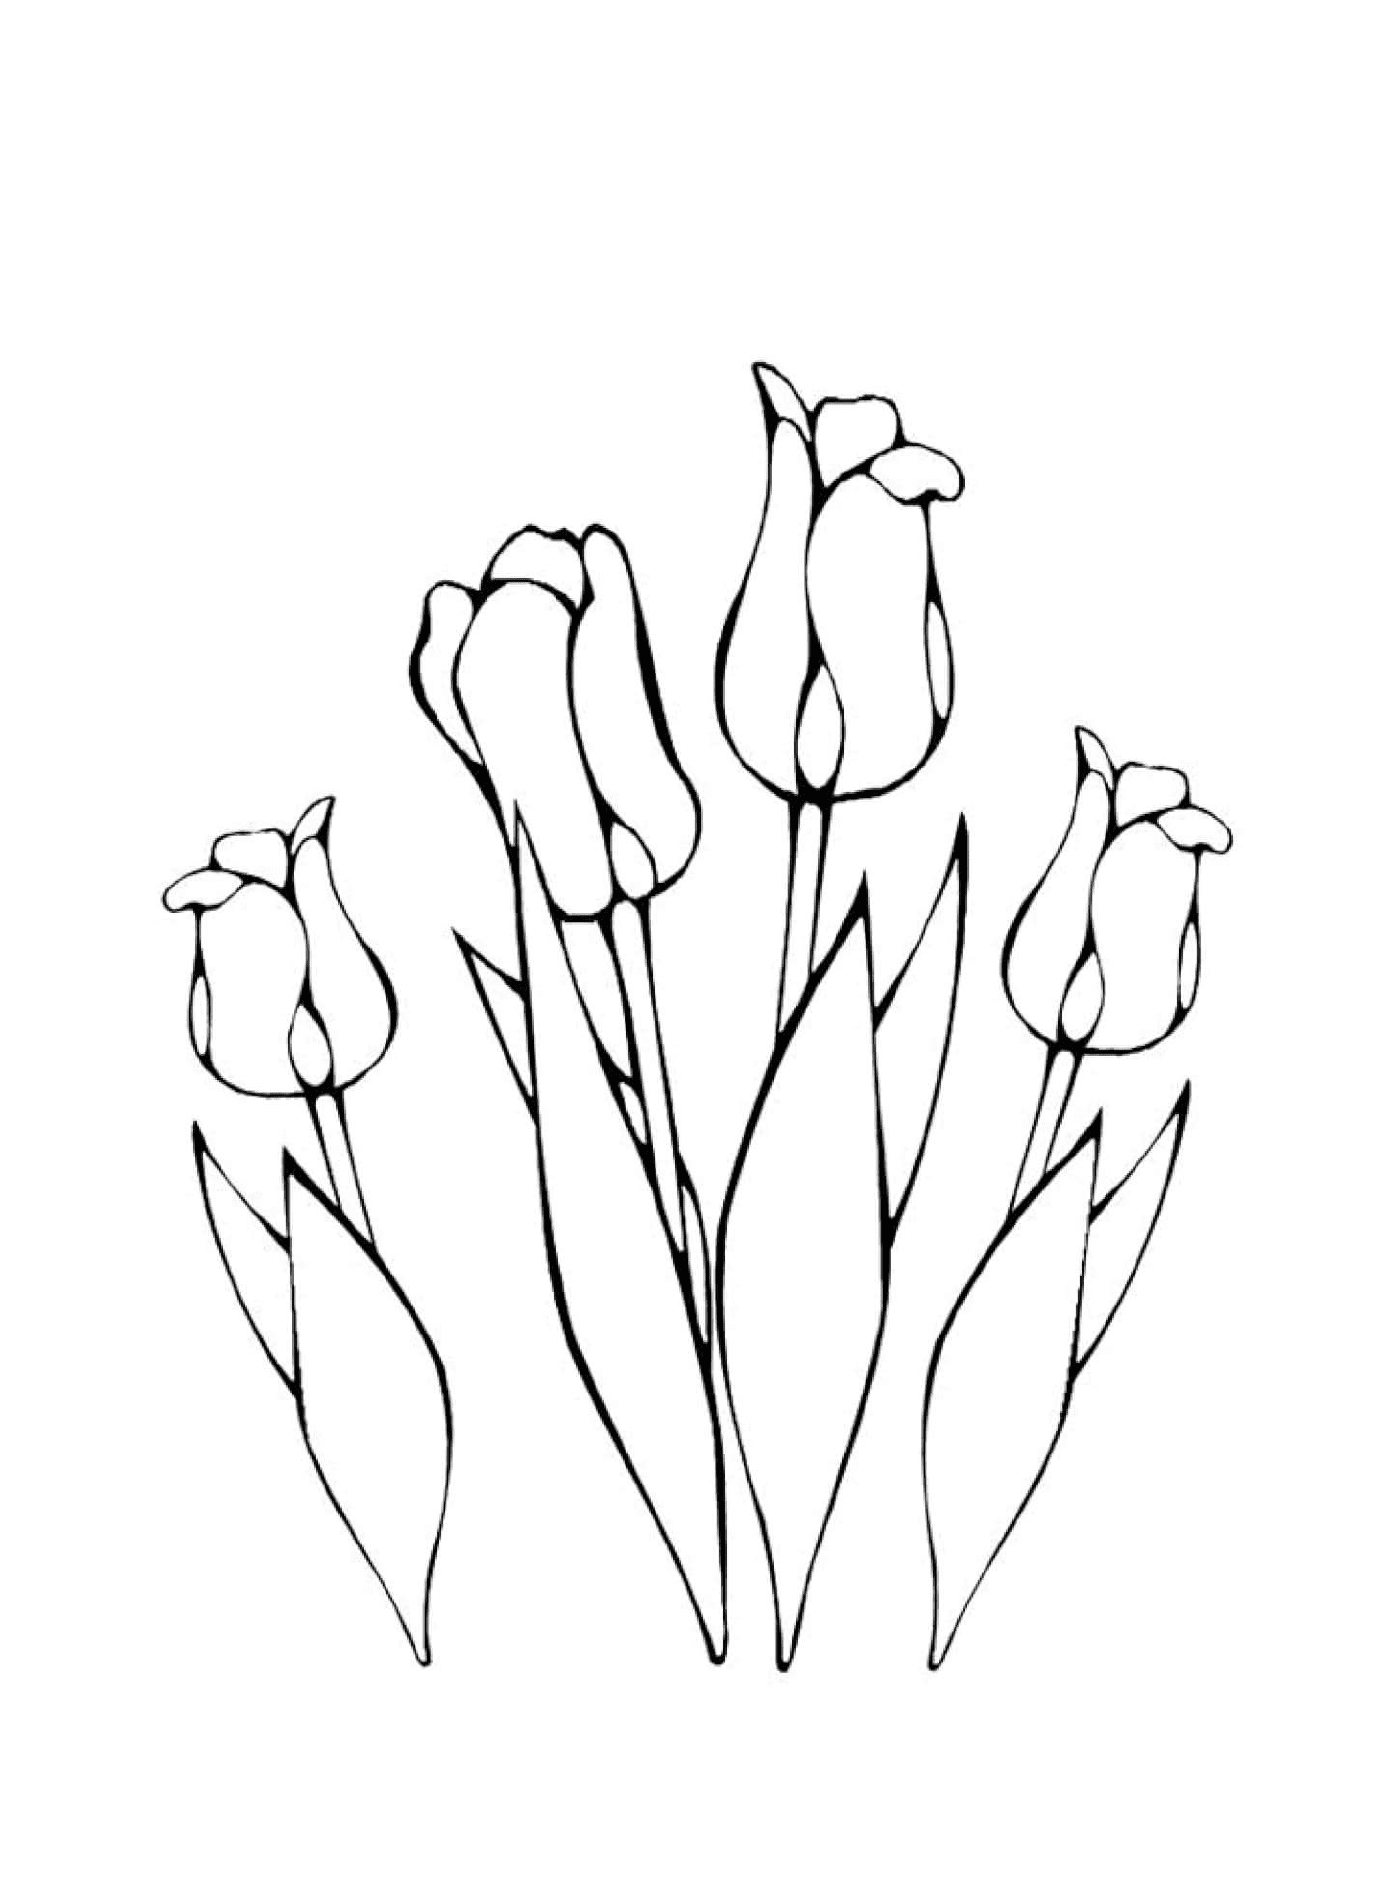  Várias flores tulips greigii 